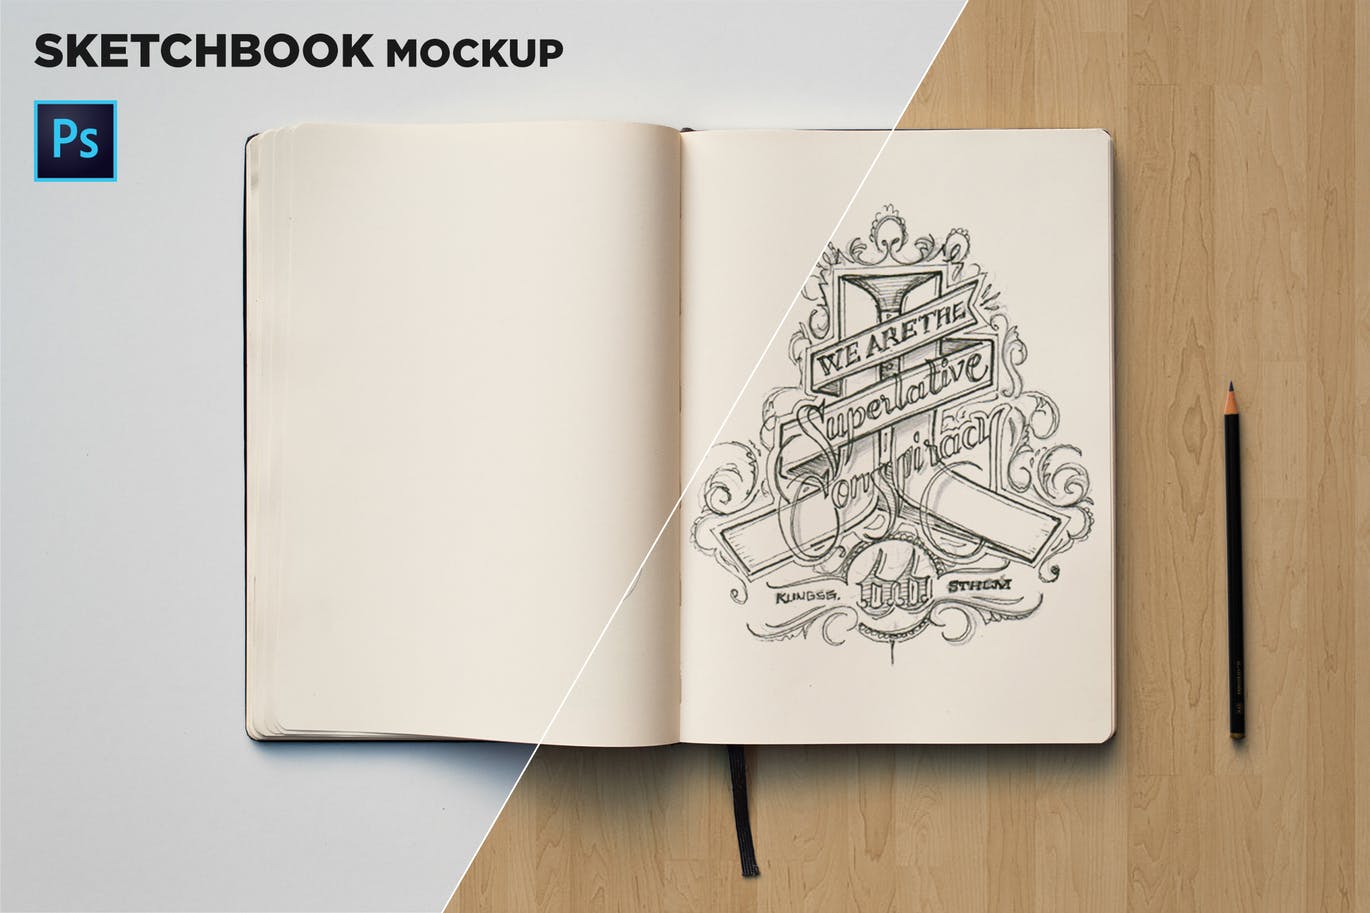 素描本内页设计/艺术作品展示顶视图样机第一素材精选 Sketchbook Mockup Top View插图